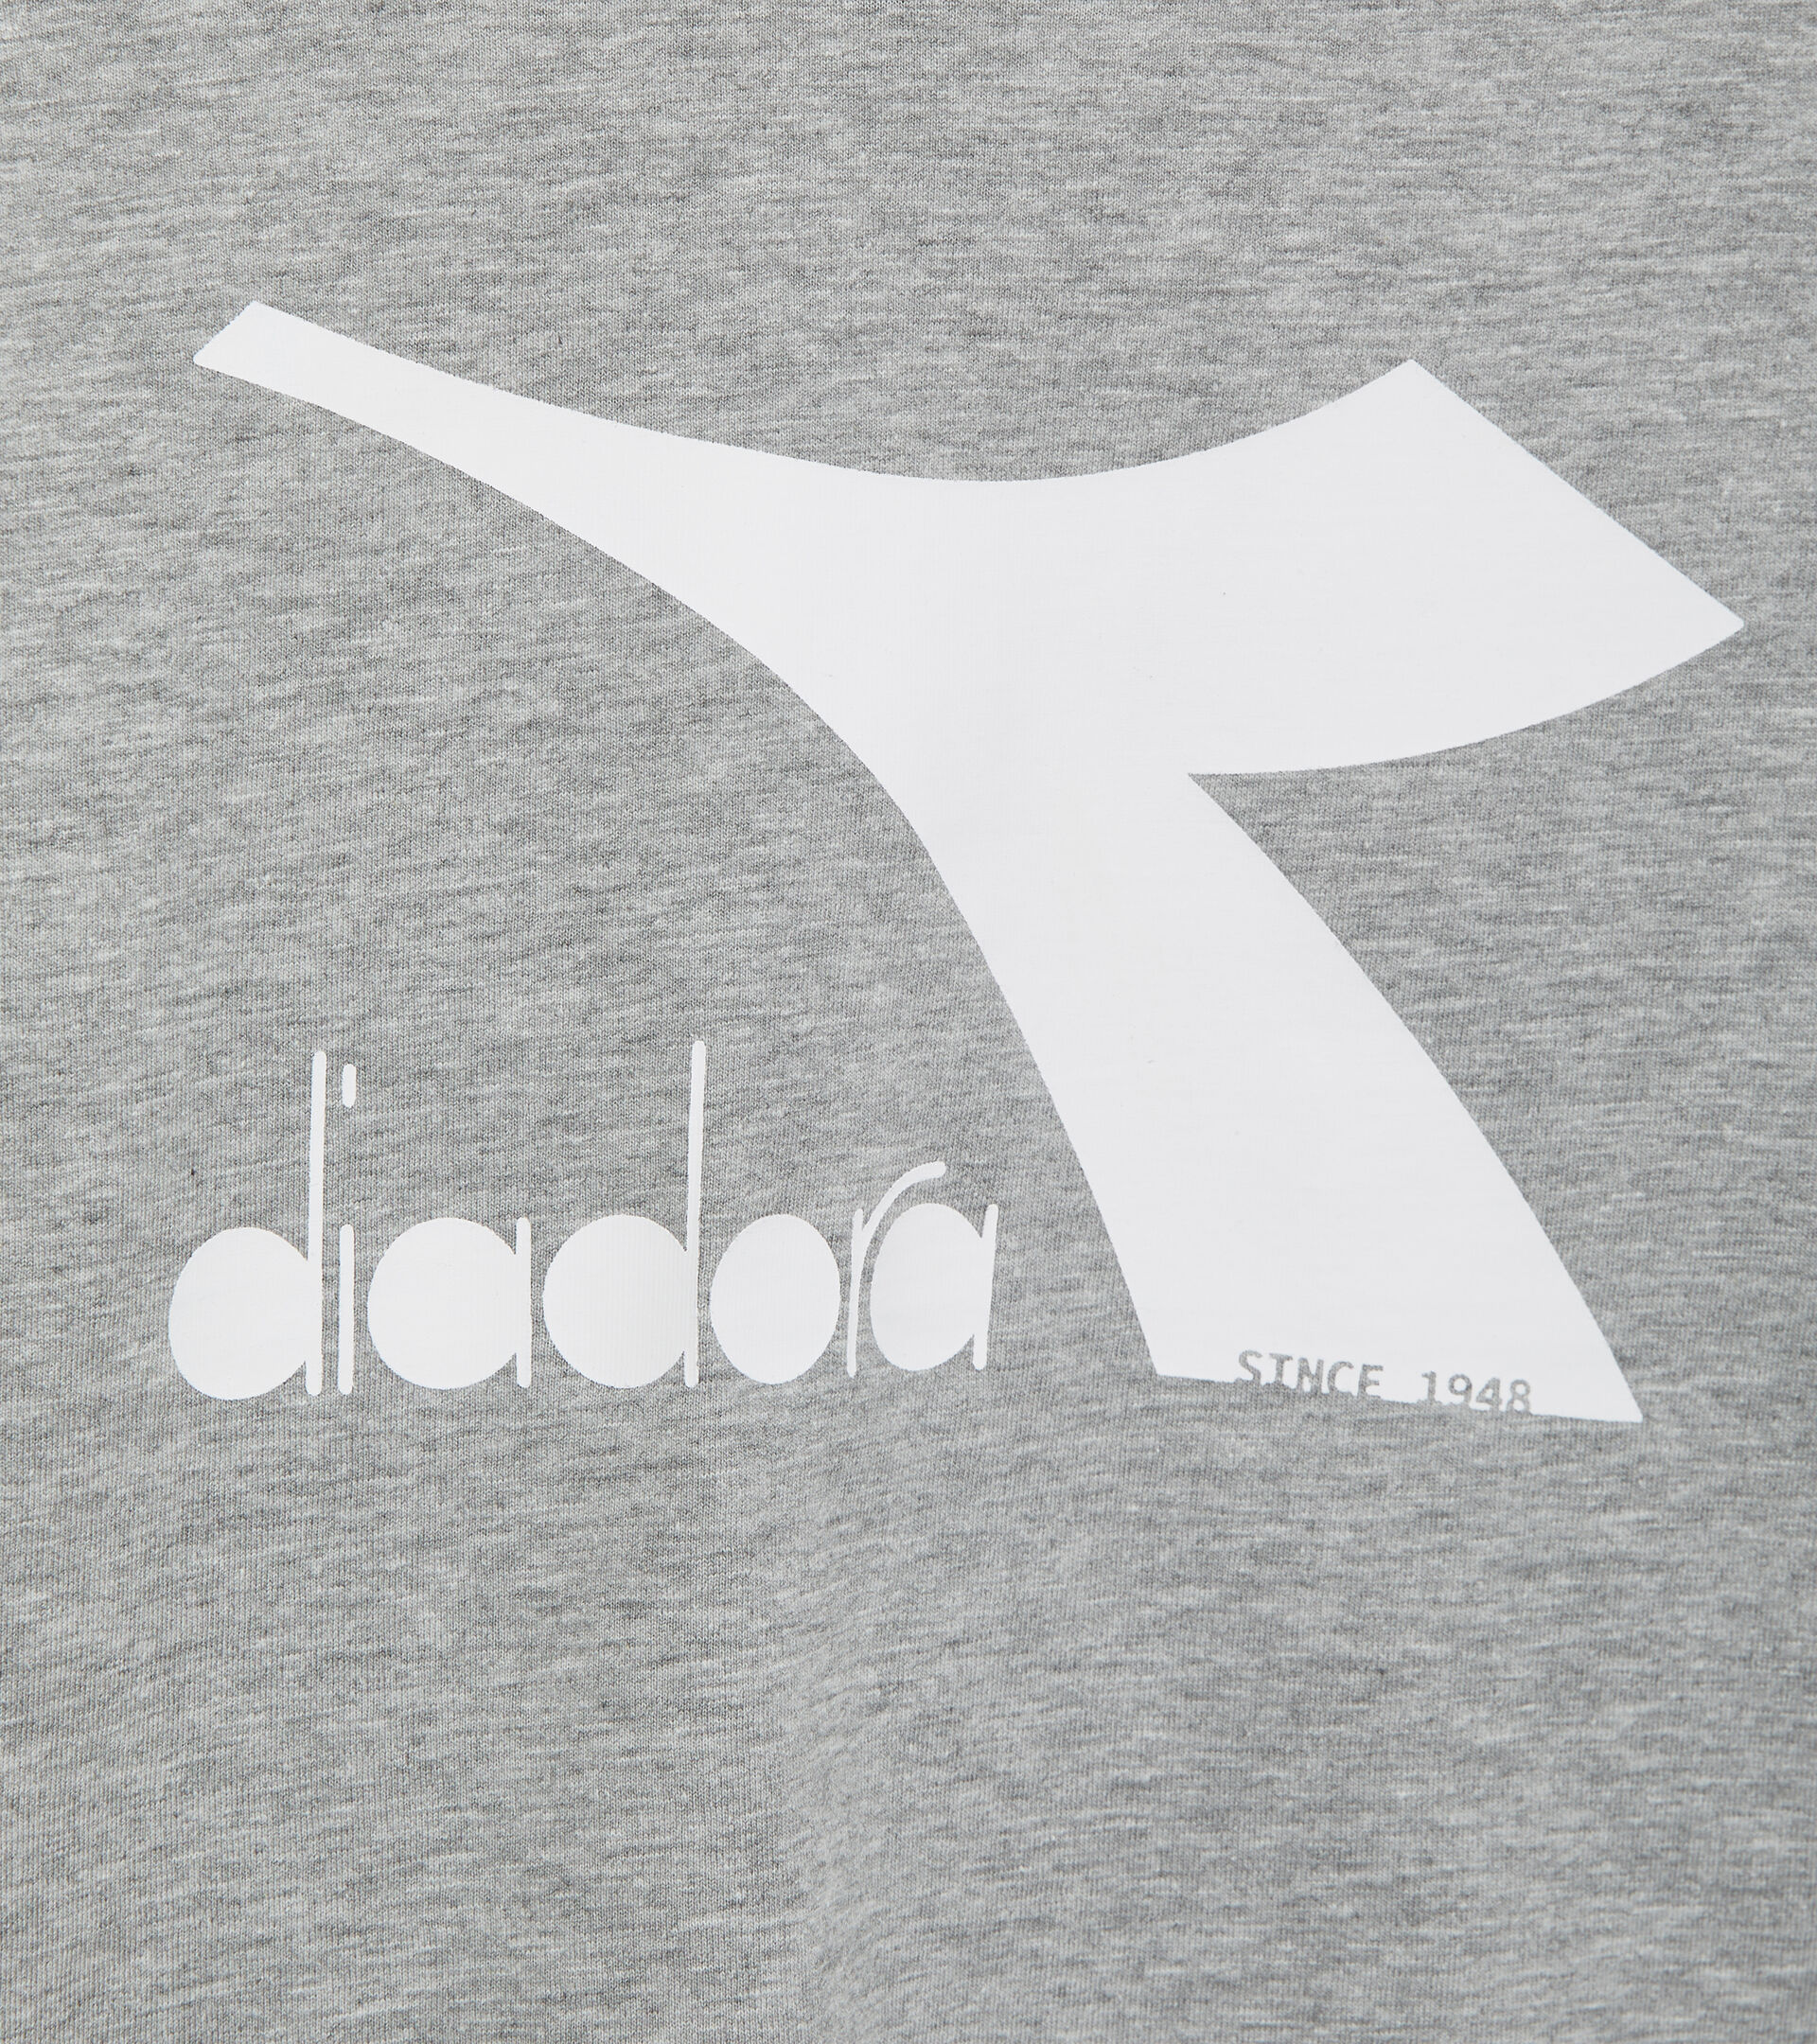 T-shirt de sport - Enfants
 JU.T-SHIRT SS BL GRIS MOYEN CLAIR MELANGE - Diadora